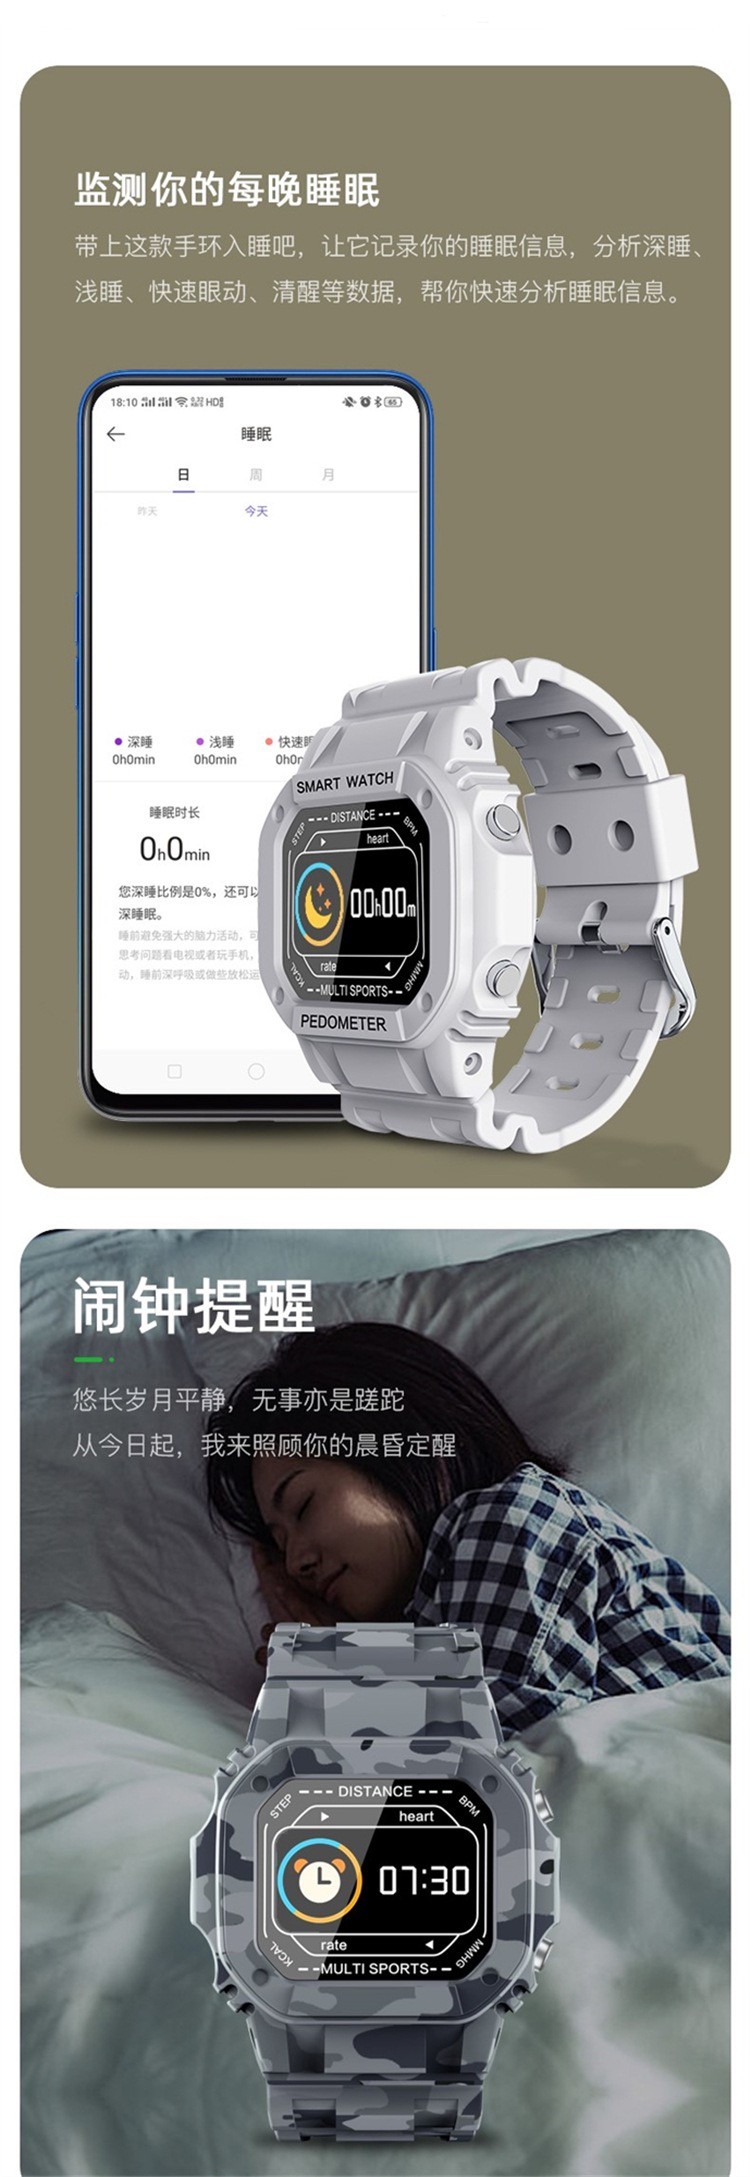 N50智能彩屏手表户外运动心率血压监测电话信息提醒防水详情图9